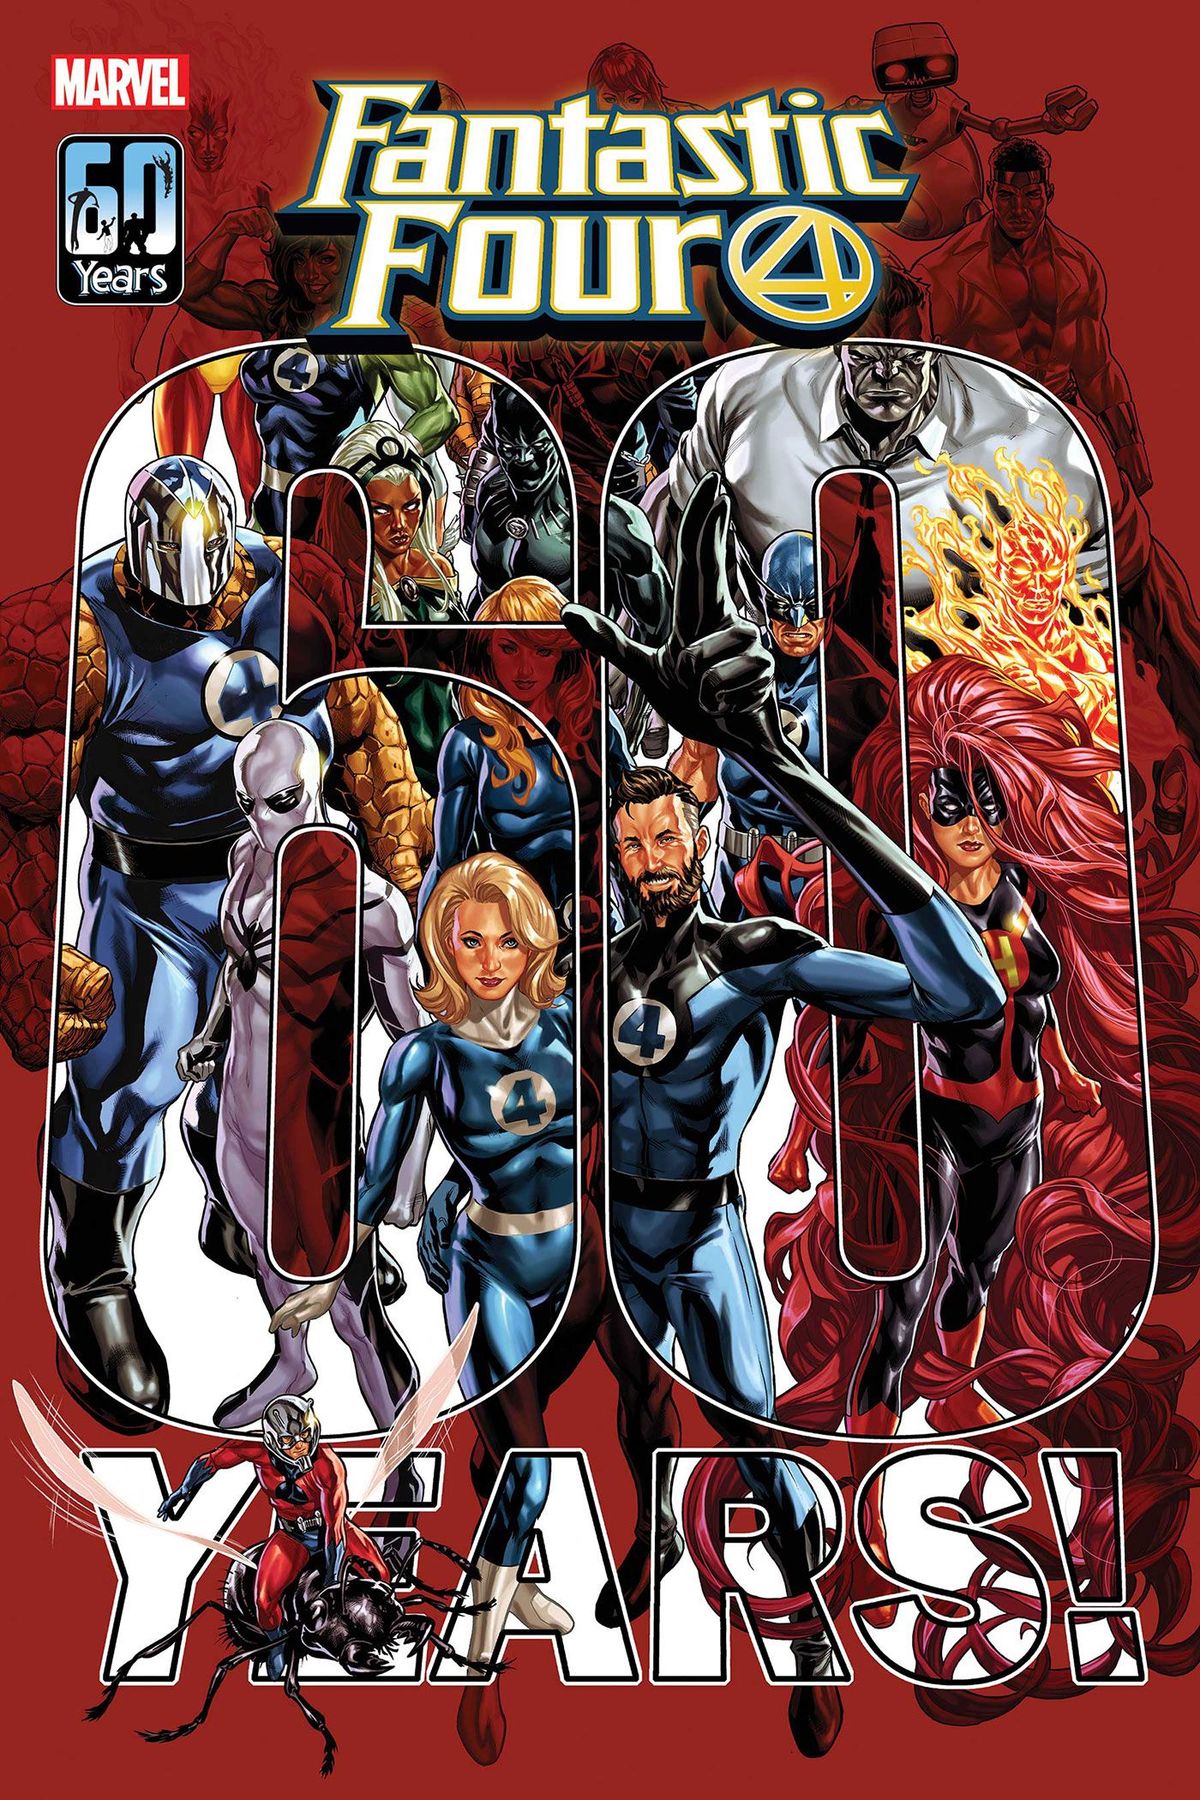 Marvel estrena la fantàstica portada del 60è aniversari de Mark Brooks